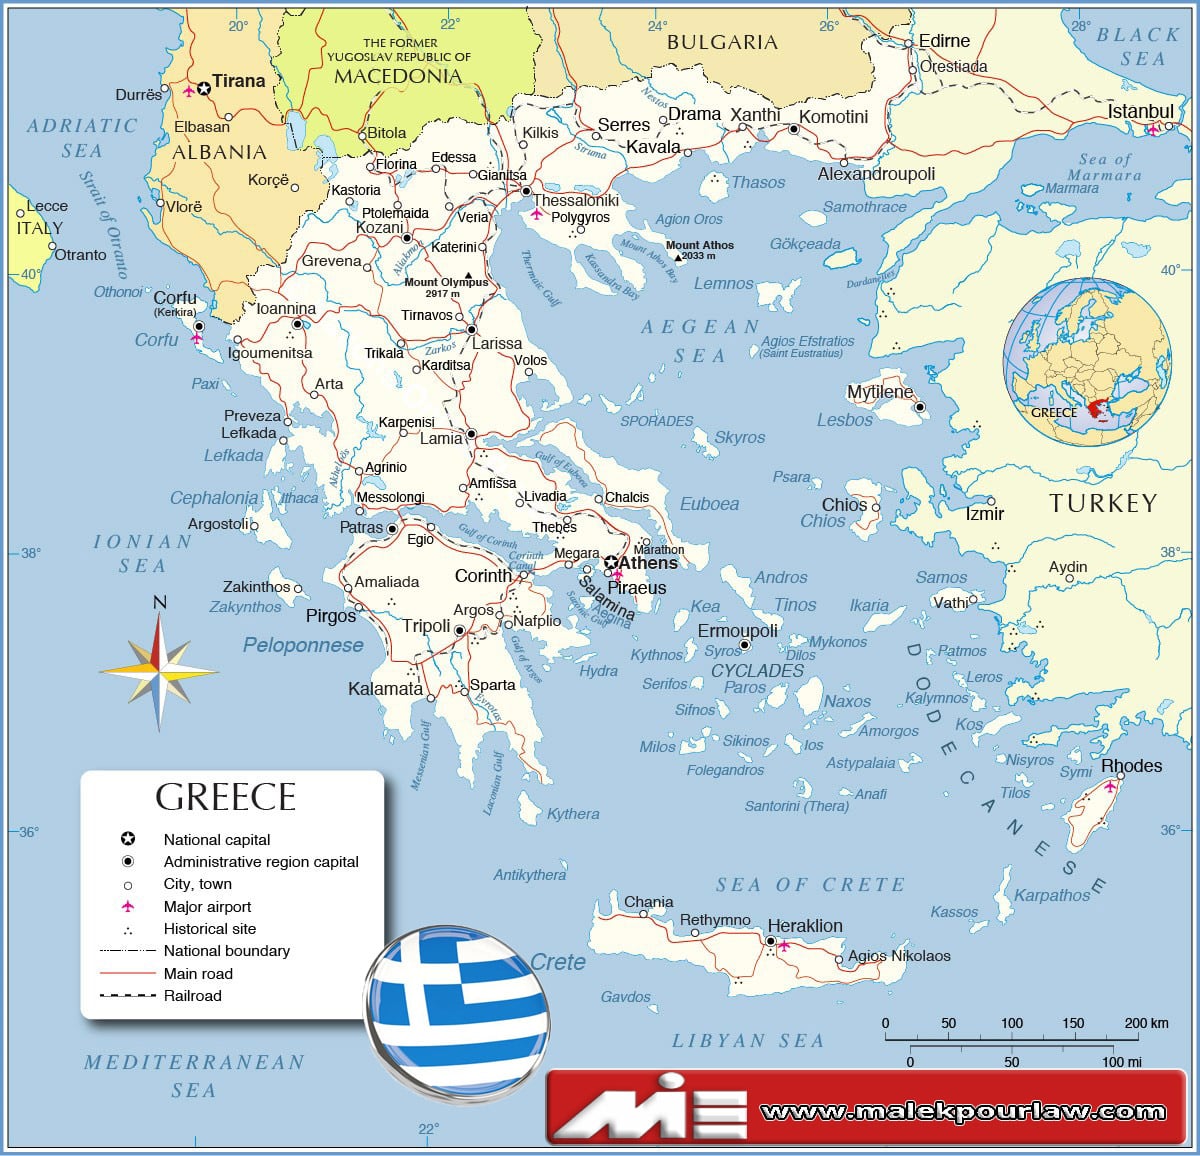 نقشه یونان - یونان کجاست؟ - مهاجرت به یونان - اقامت یونان - سفر توریستی به یونان